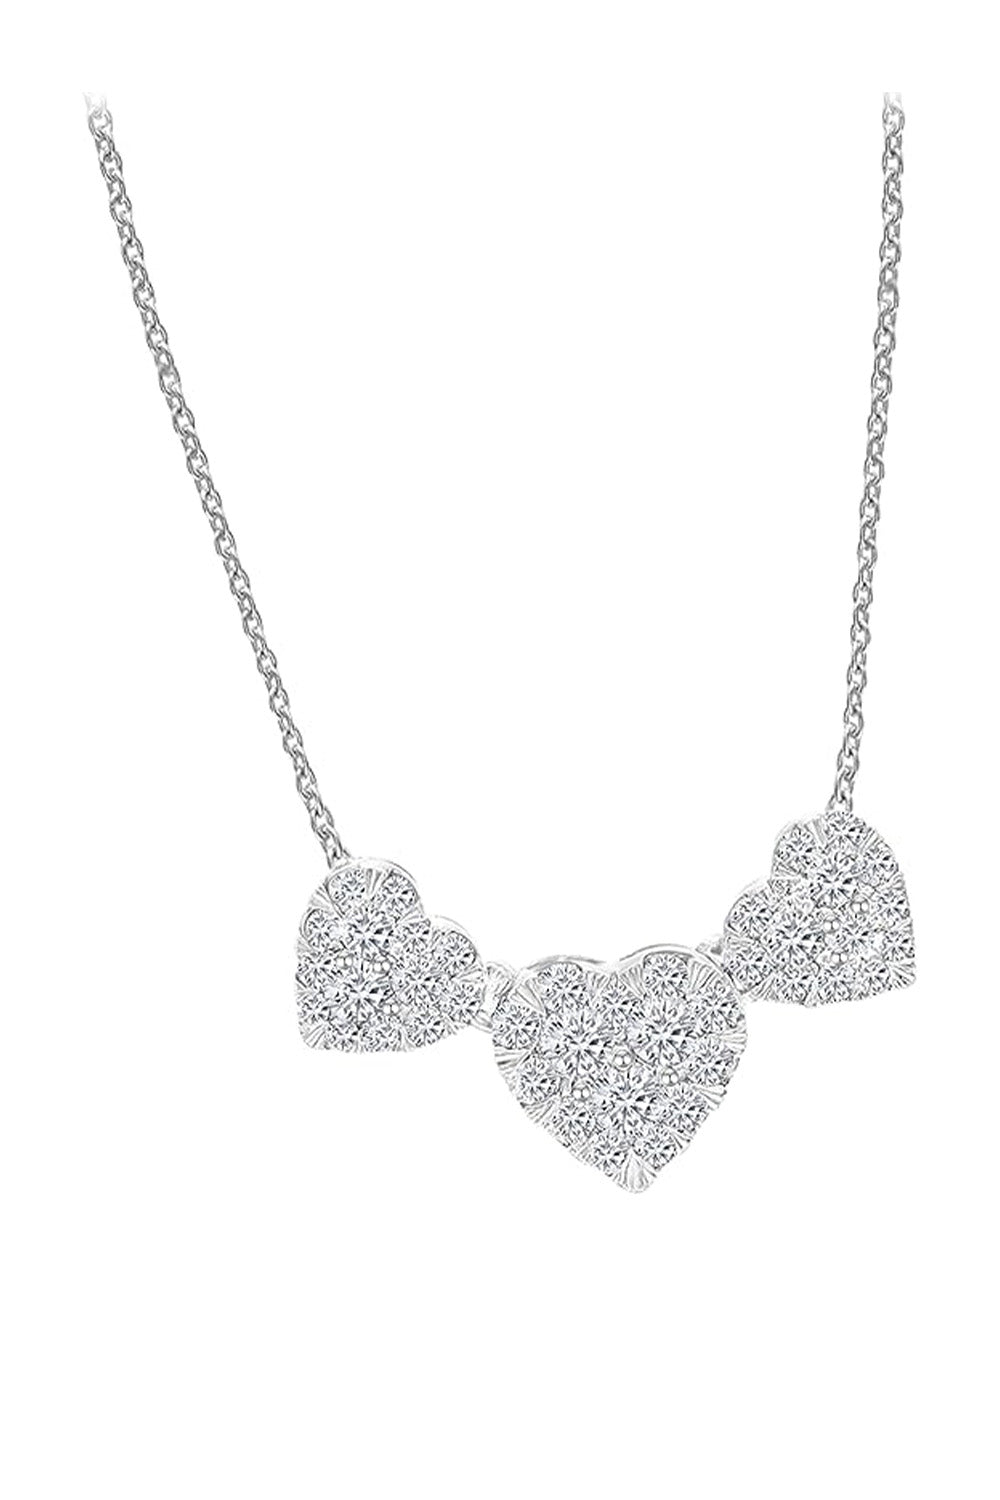 White Gold Color Triple Heart Necklace, Women's Pendant Necklace